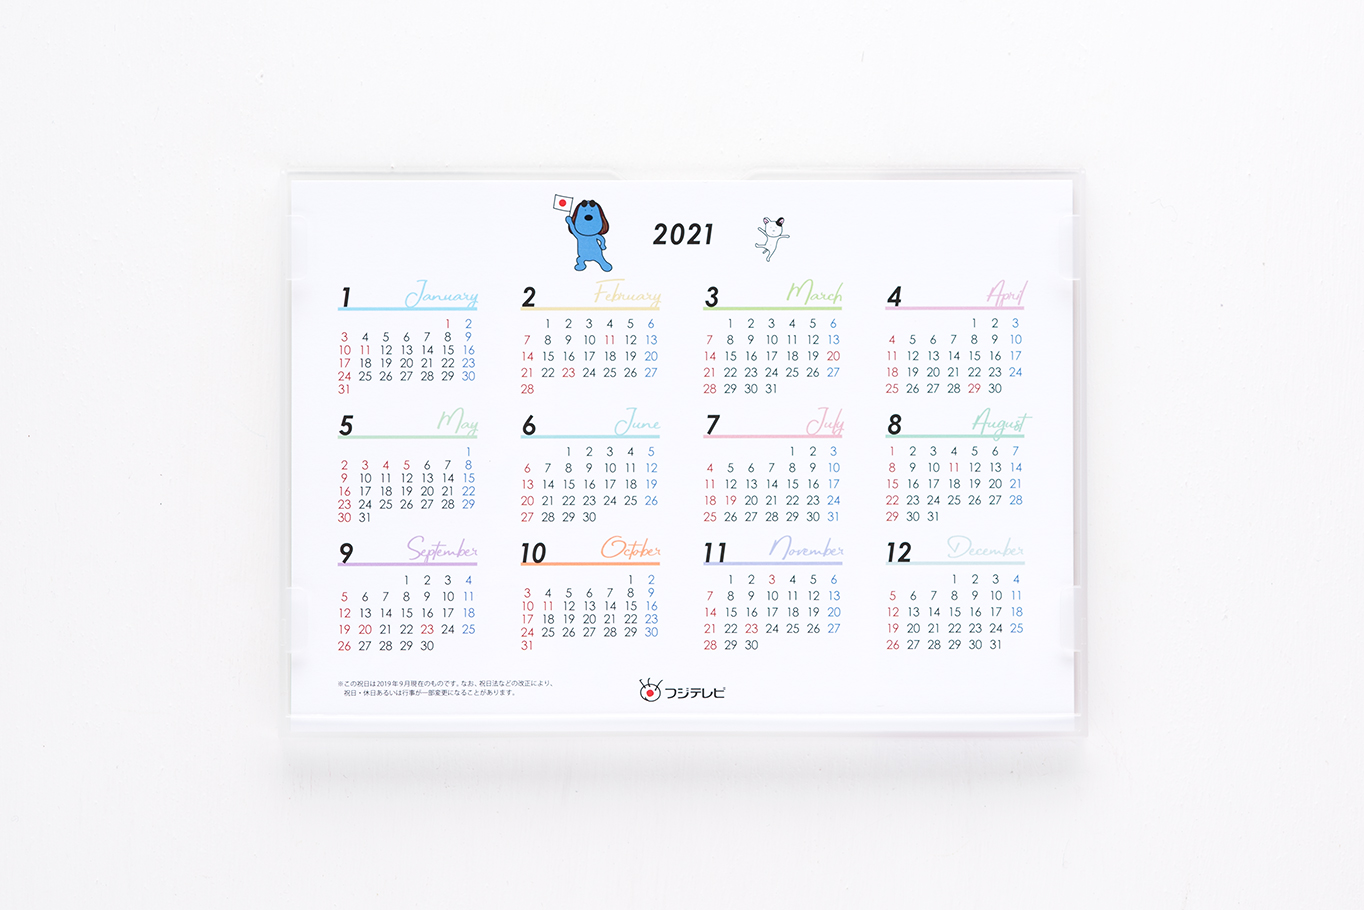 フジテレビのラフちゃん2020年卓上カレンダーの年間カレンダー